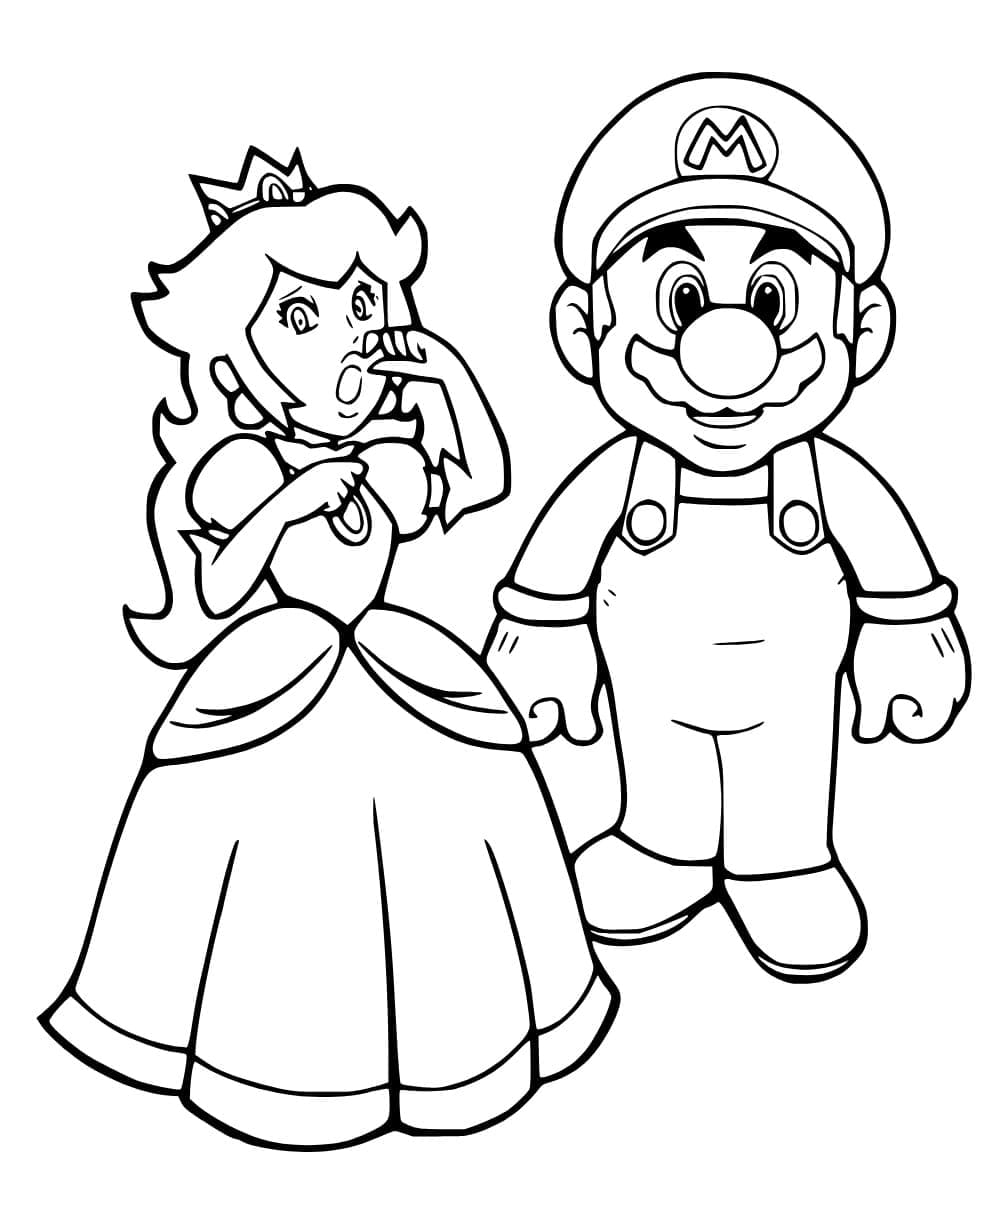 Princesse Peach et Mario coloring page